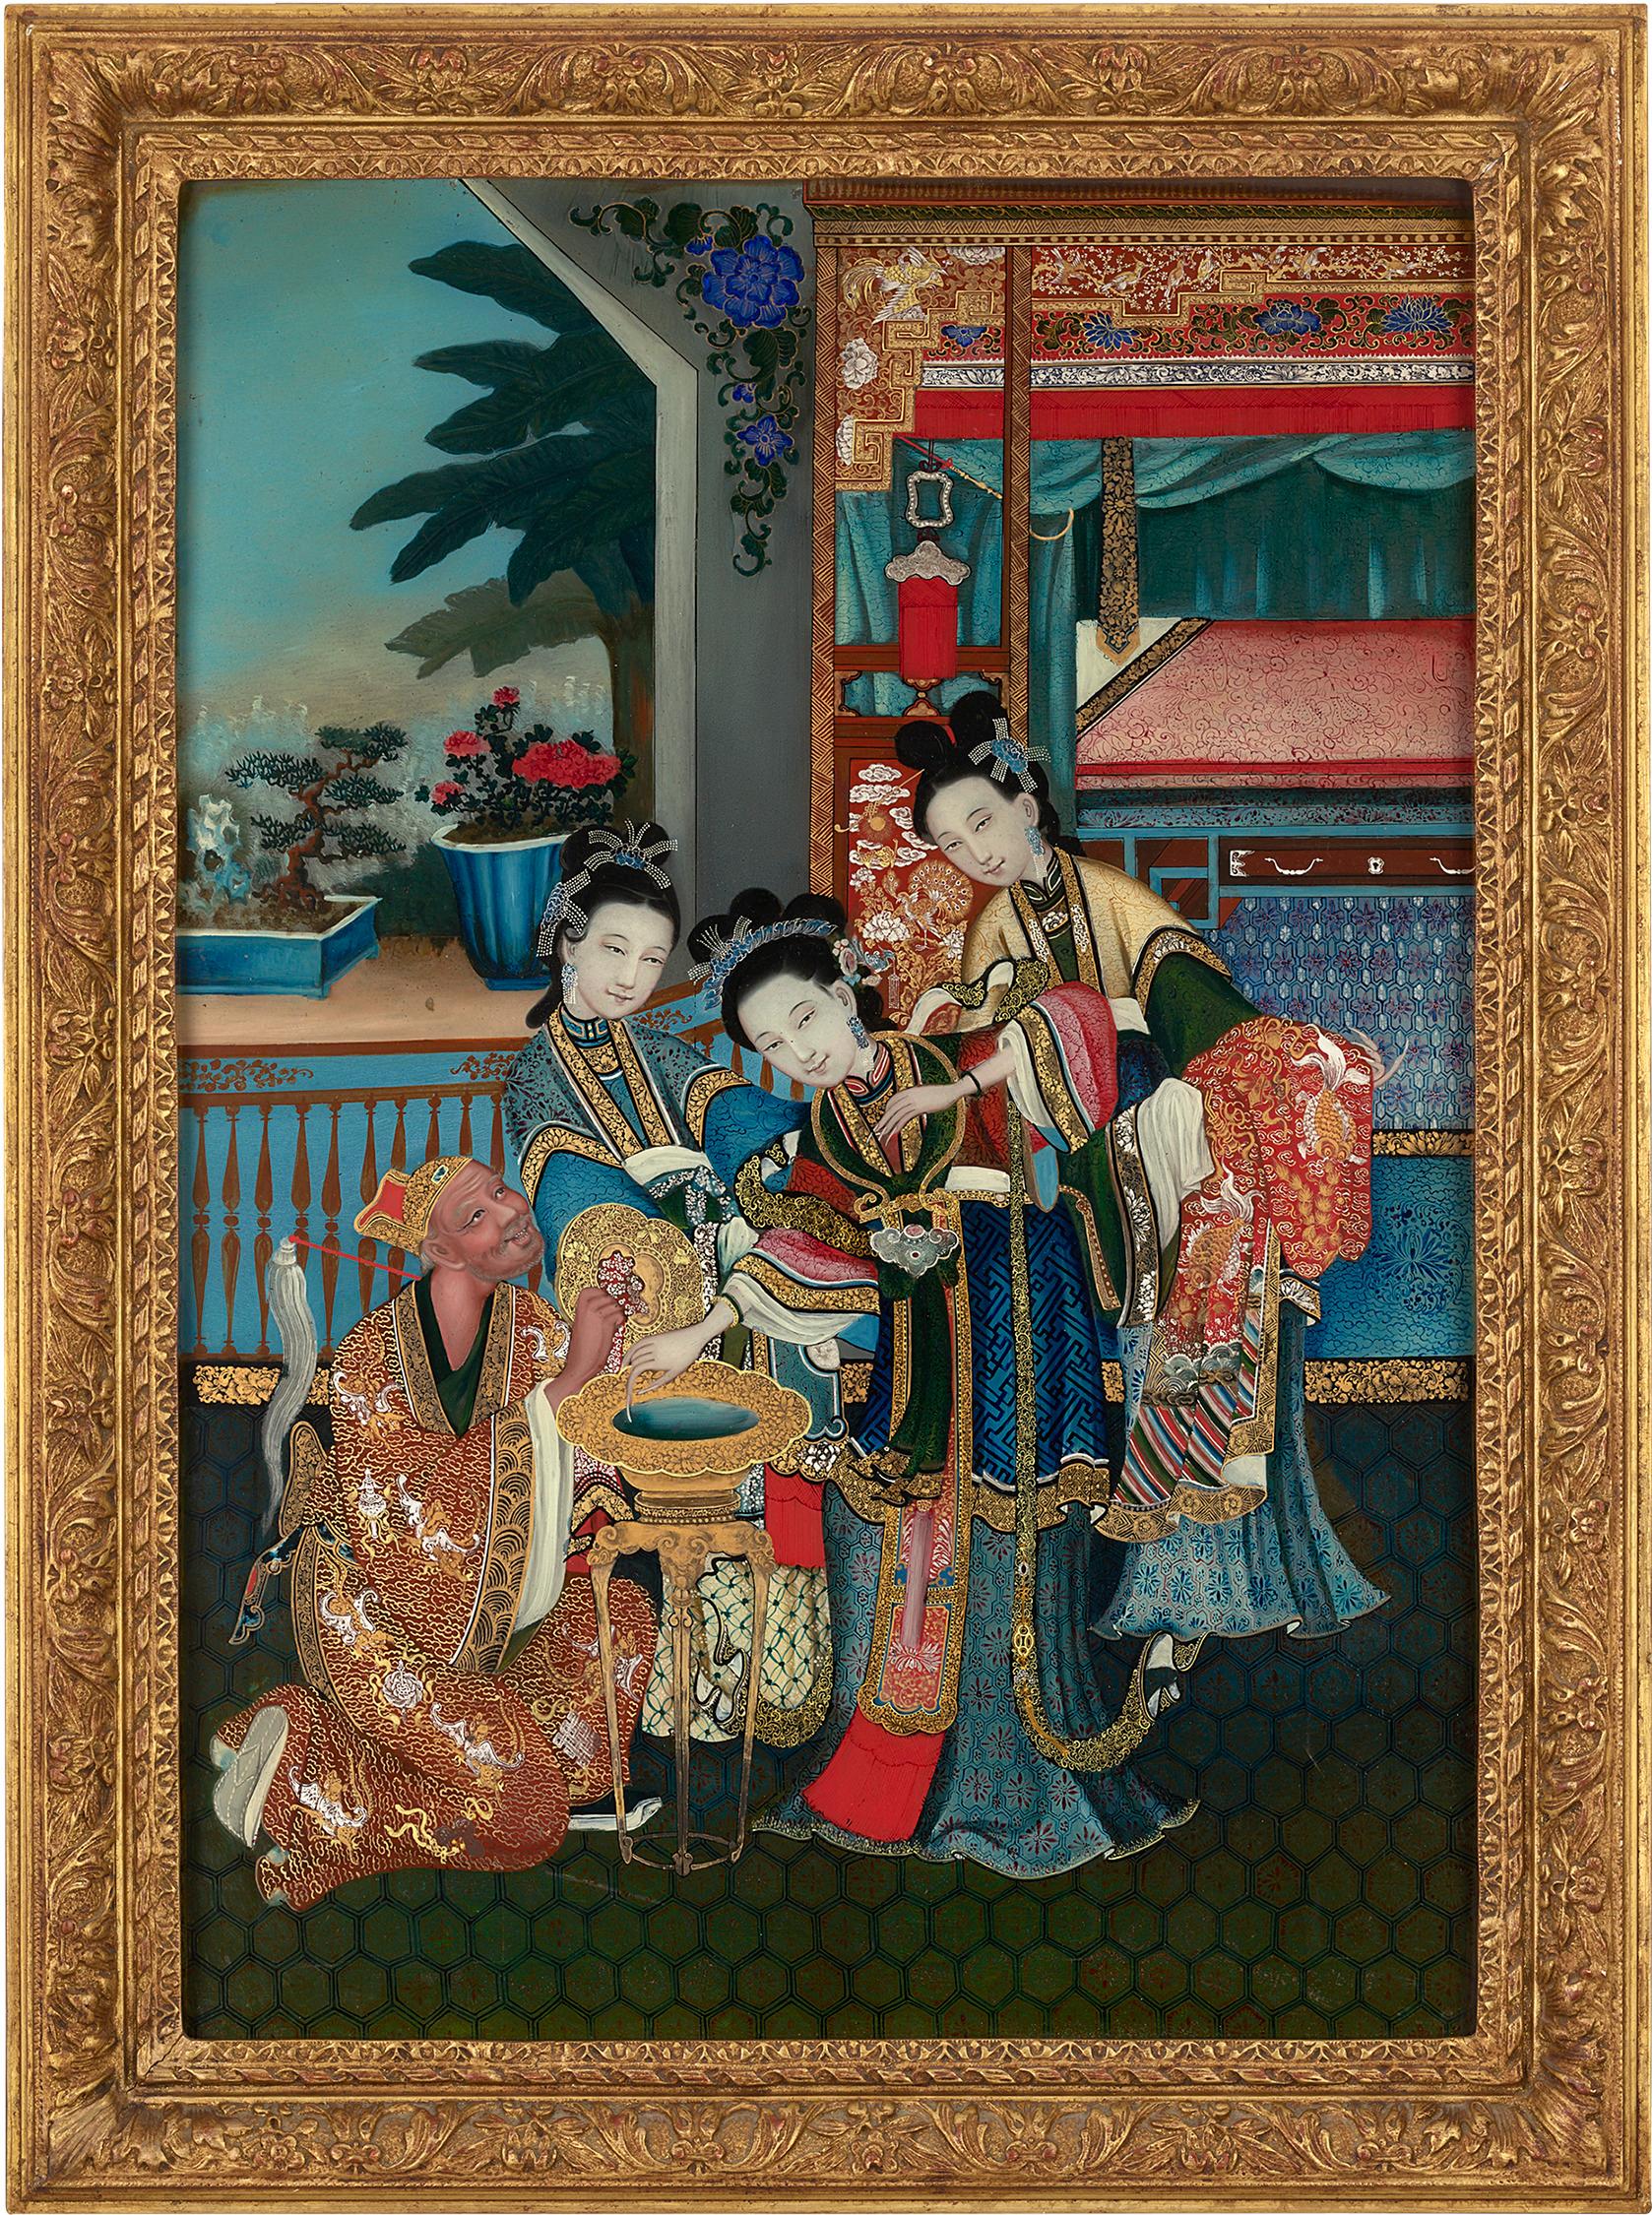 Le verre remplace la toile dans cette peinture sur verre inversé de la dynastie Qing datant du XIXe siècle. Les peintres et calligraphes chinois ont commencé à peindre à l'huile sur verre au milieu du 18e siècle, et cette technique exigeait une